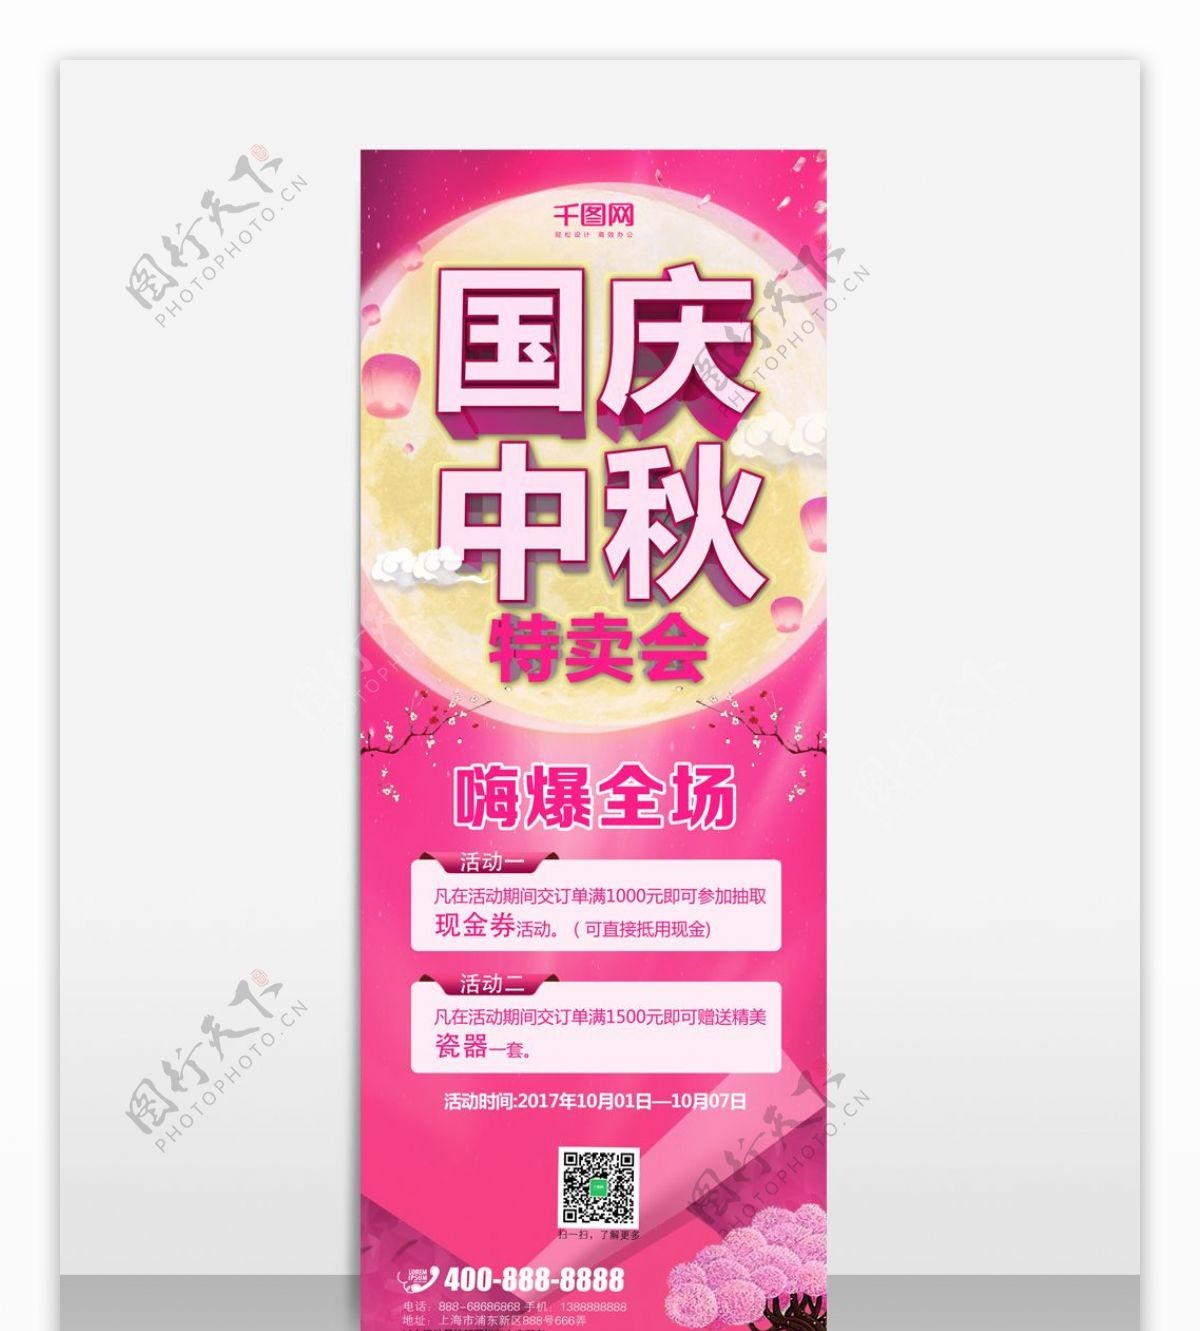 国庆中秋粉色背景3D渲染促销展架